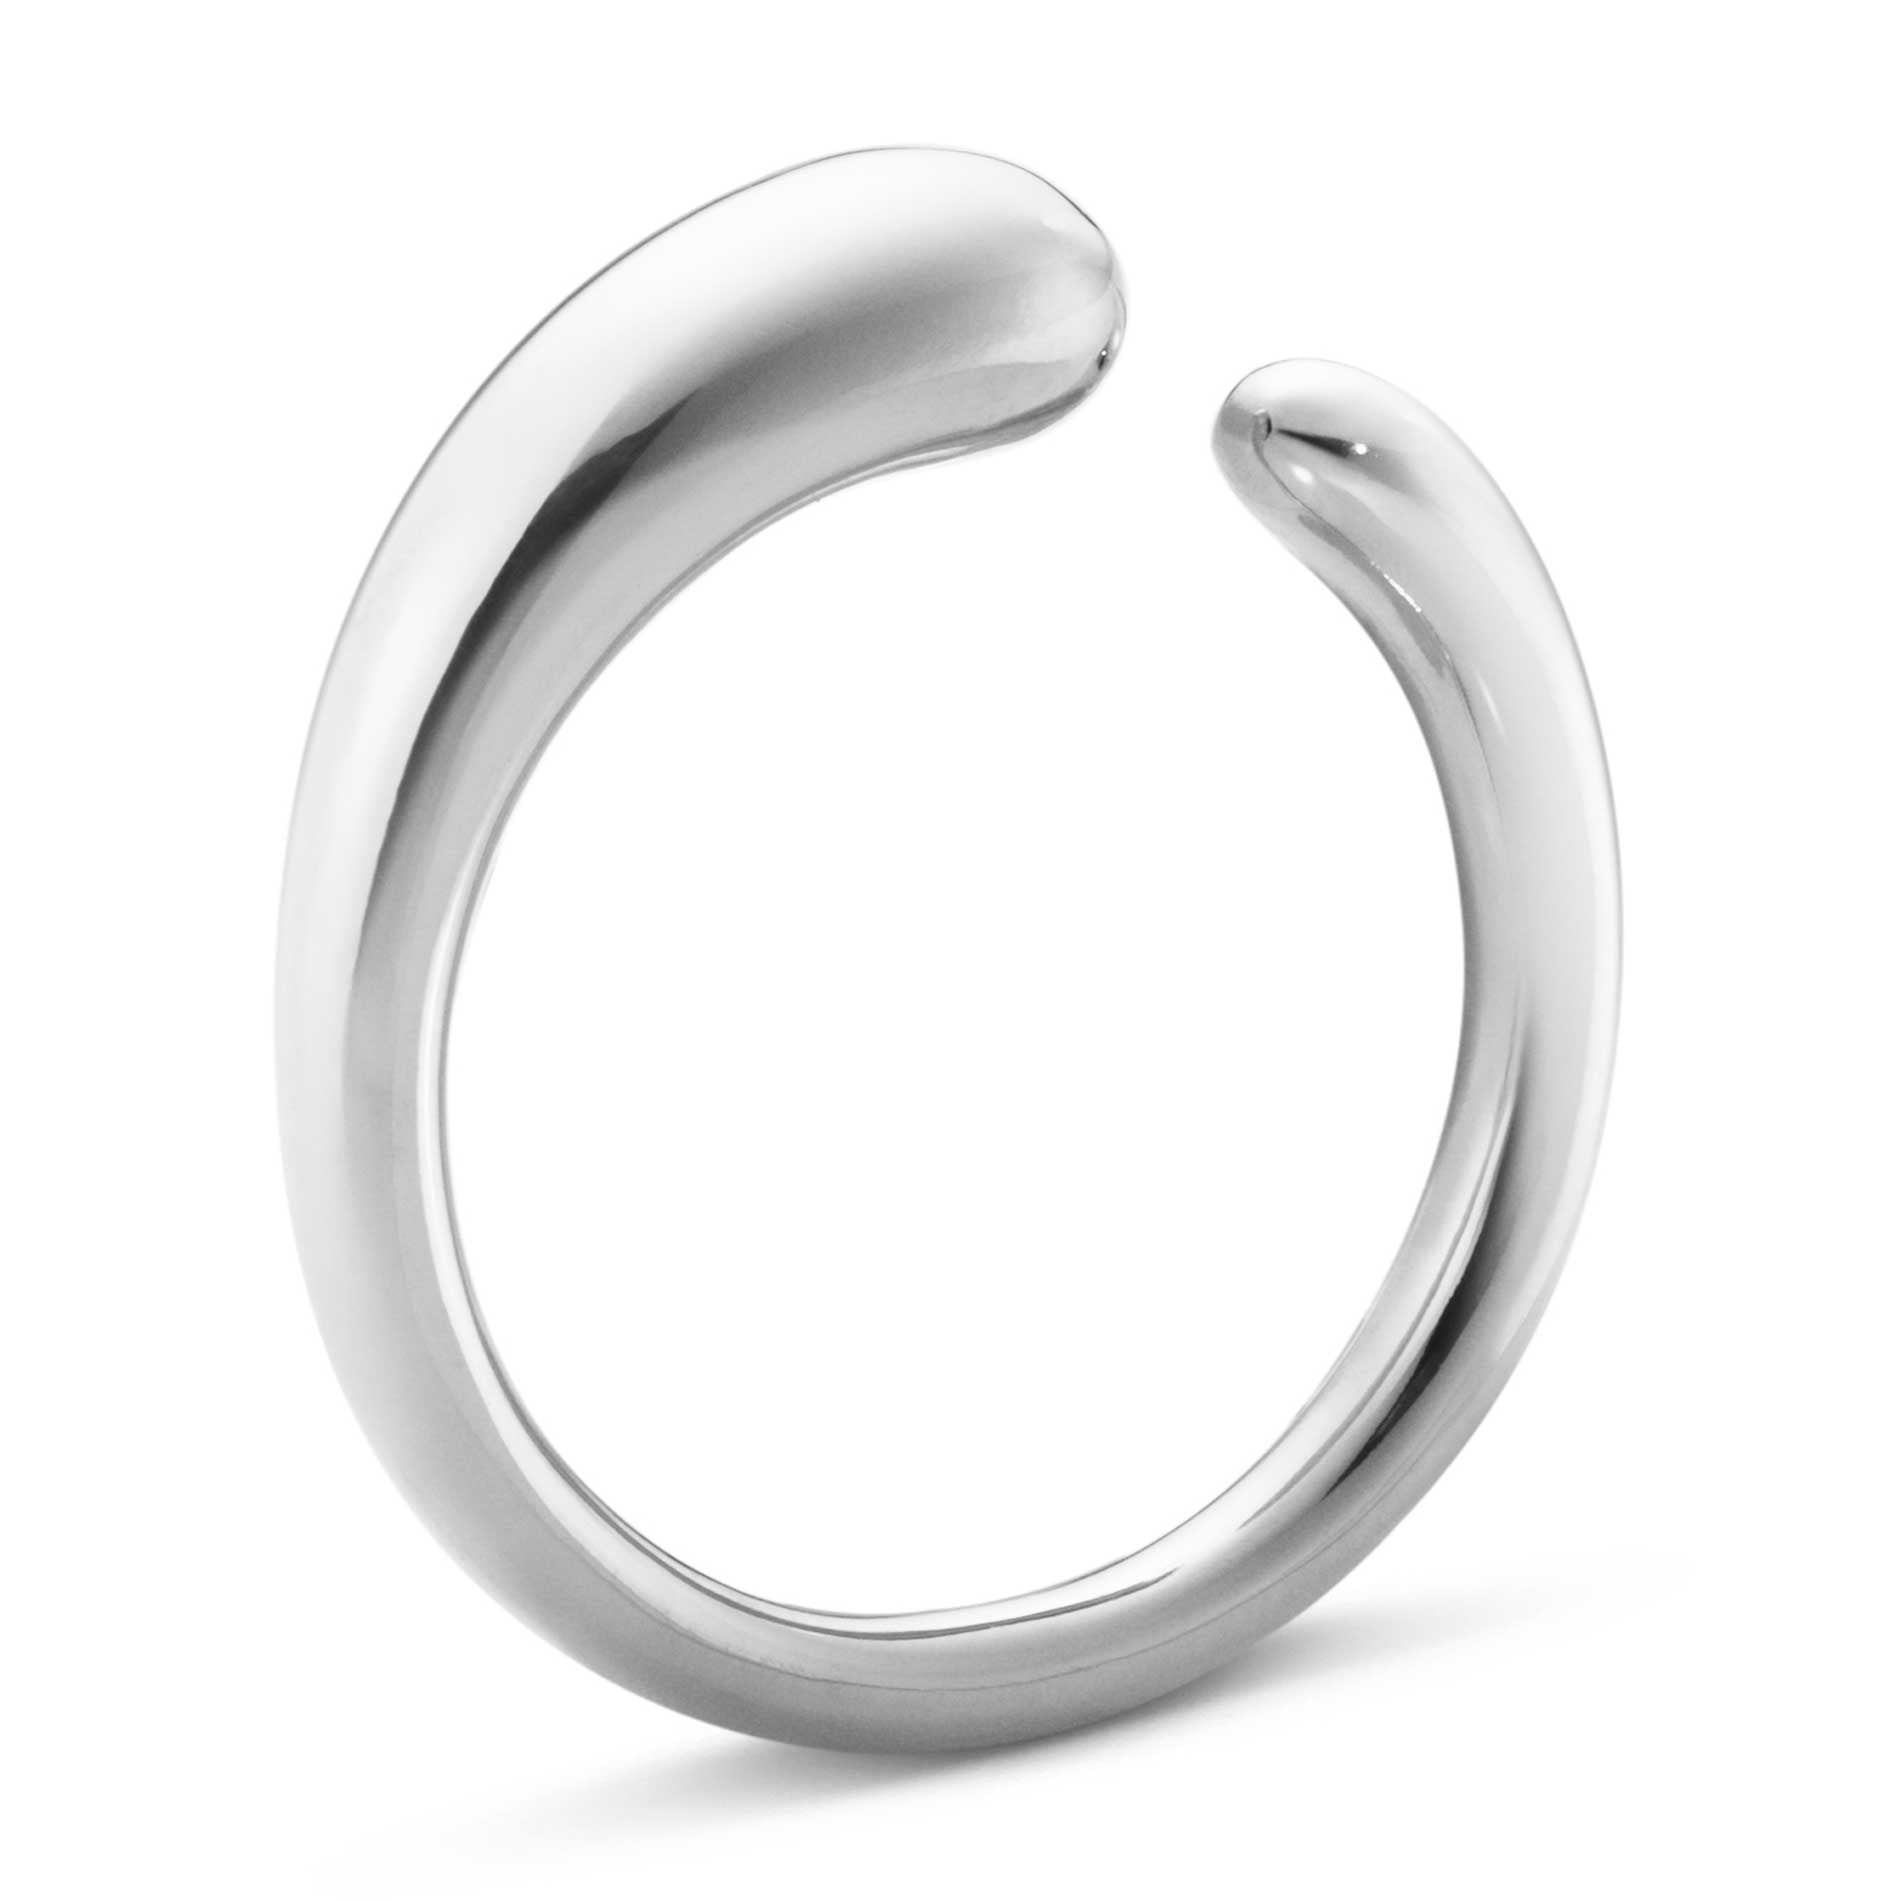 Sølv ring fra Georg Jensen Mercy kollektion